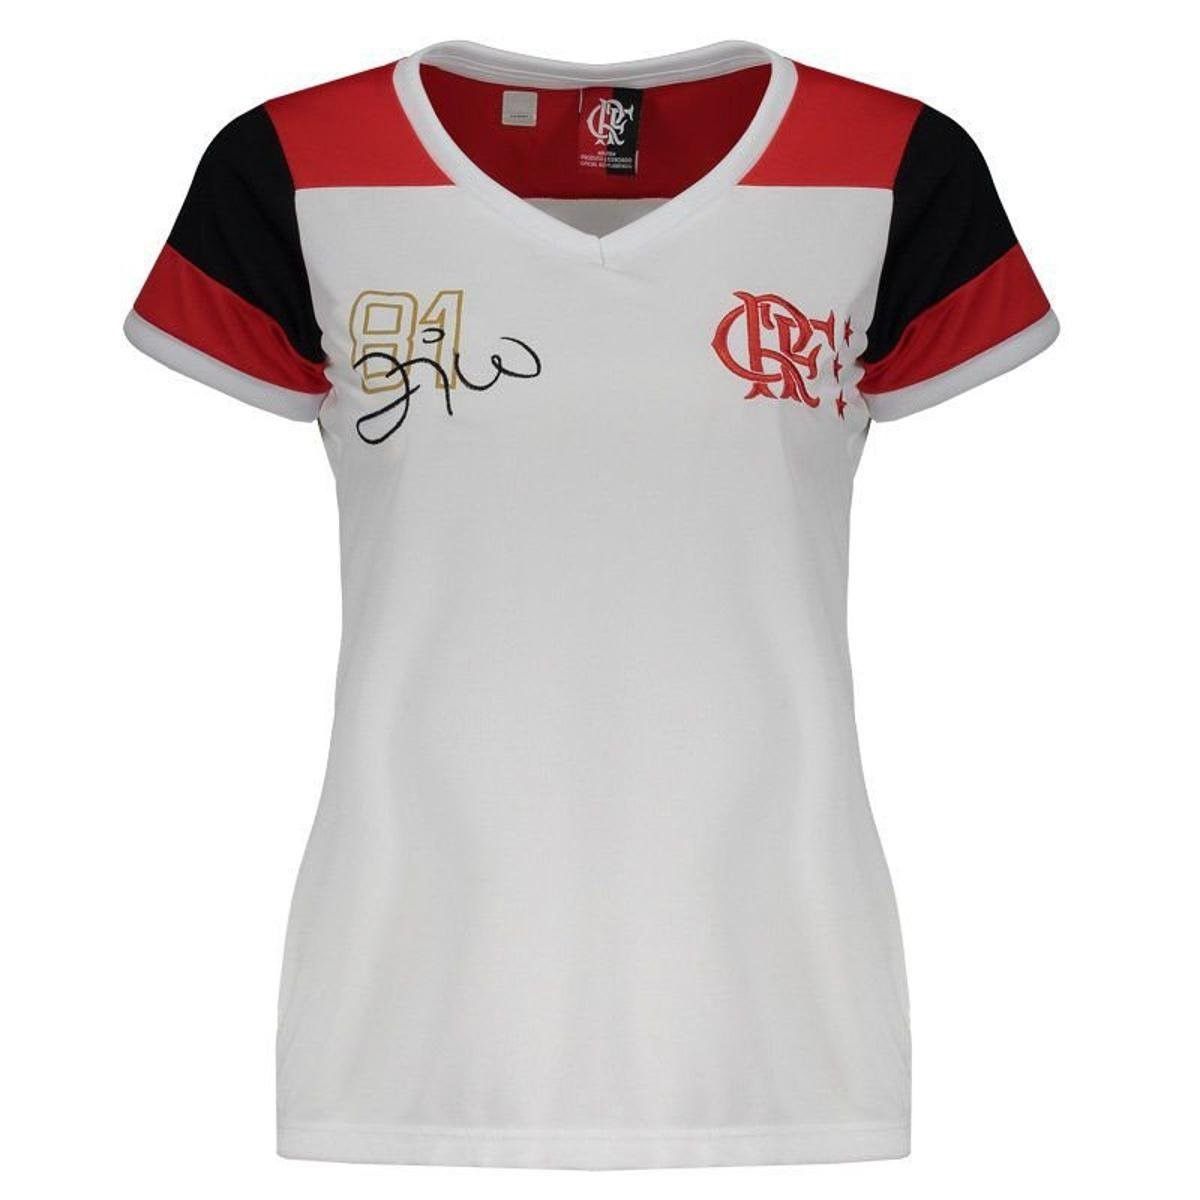 Camisa Babylook Braziline Flamengo Zico Retro - Feminino - Branco e Vermelho